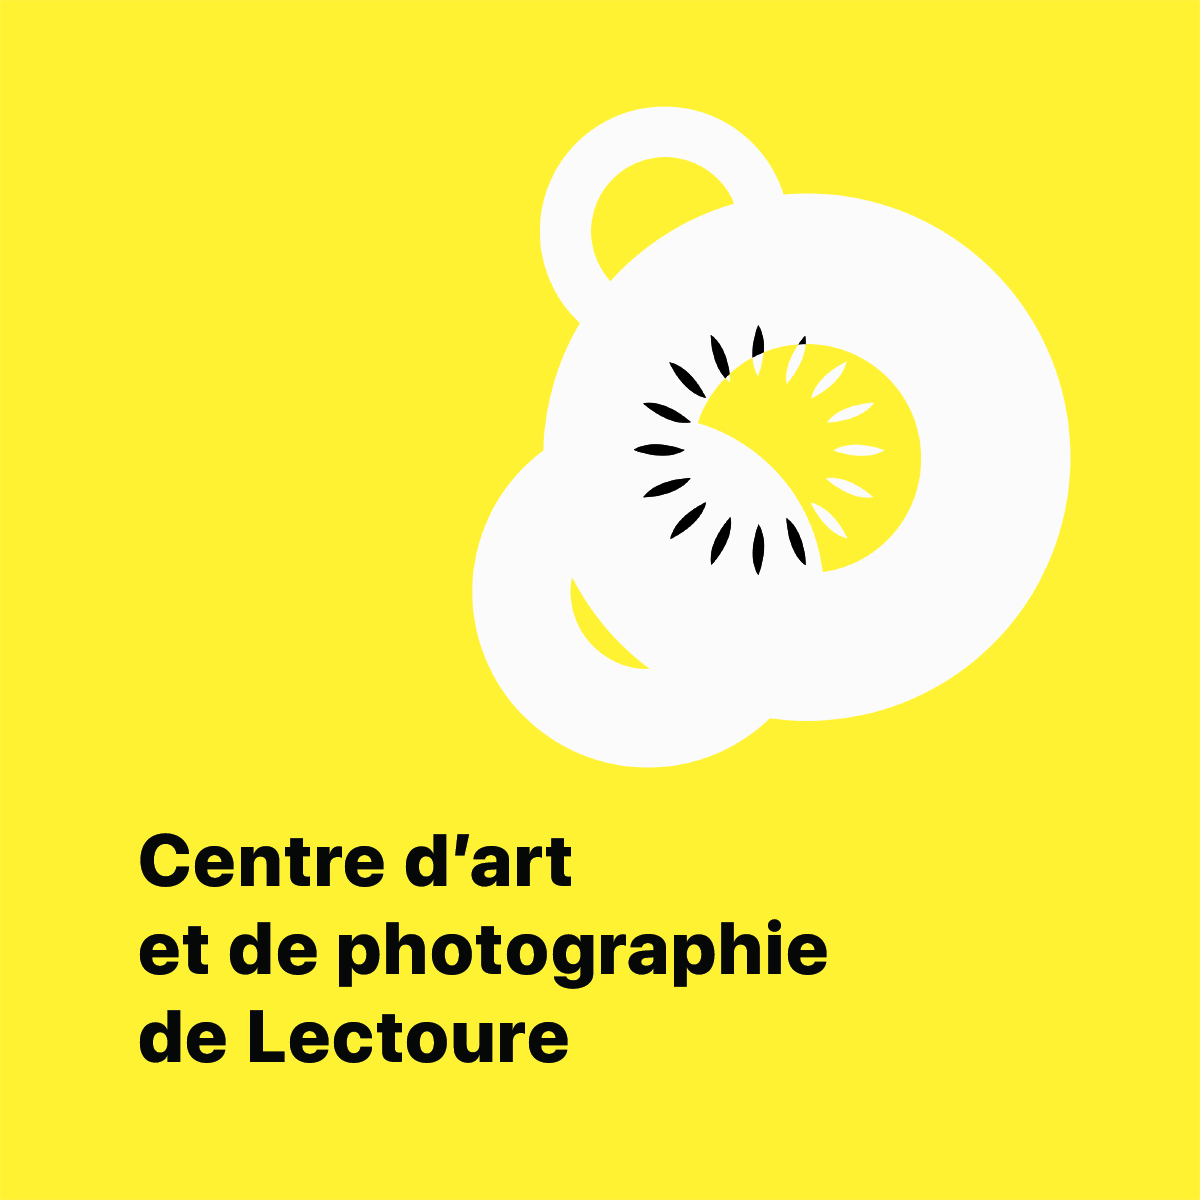 Le Centre d’art et de photographie de Lectoure recrute